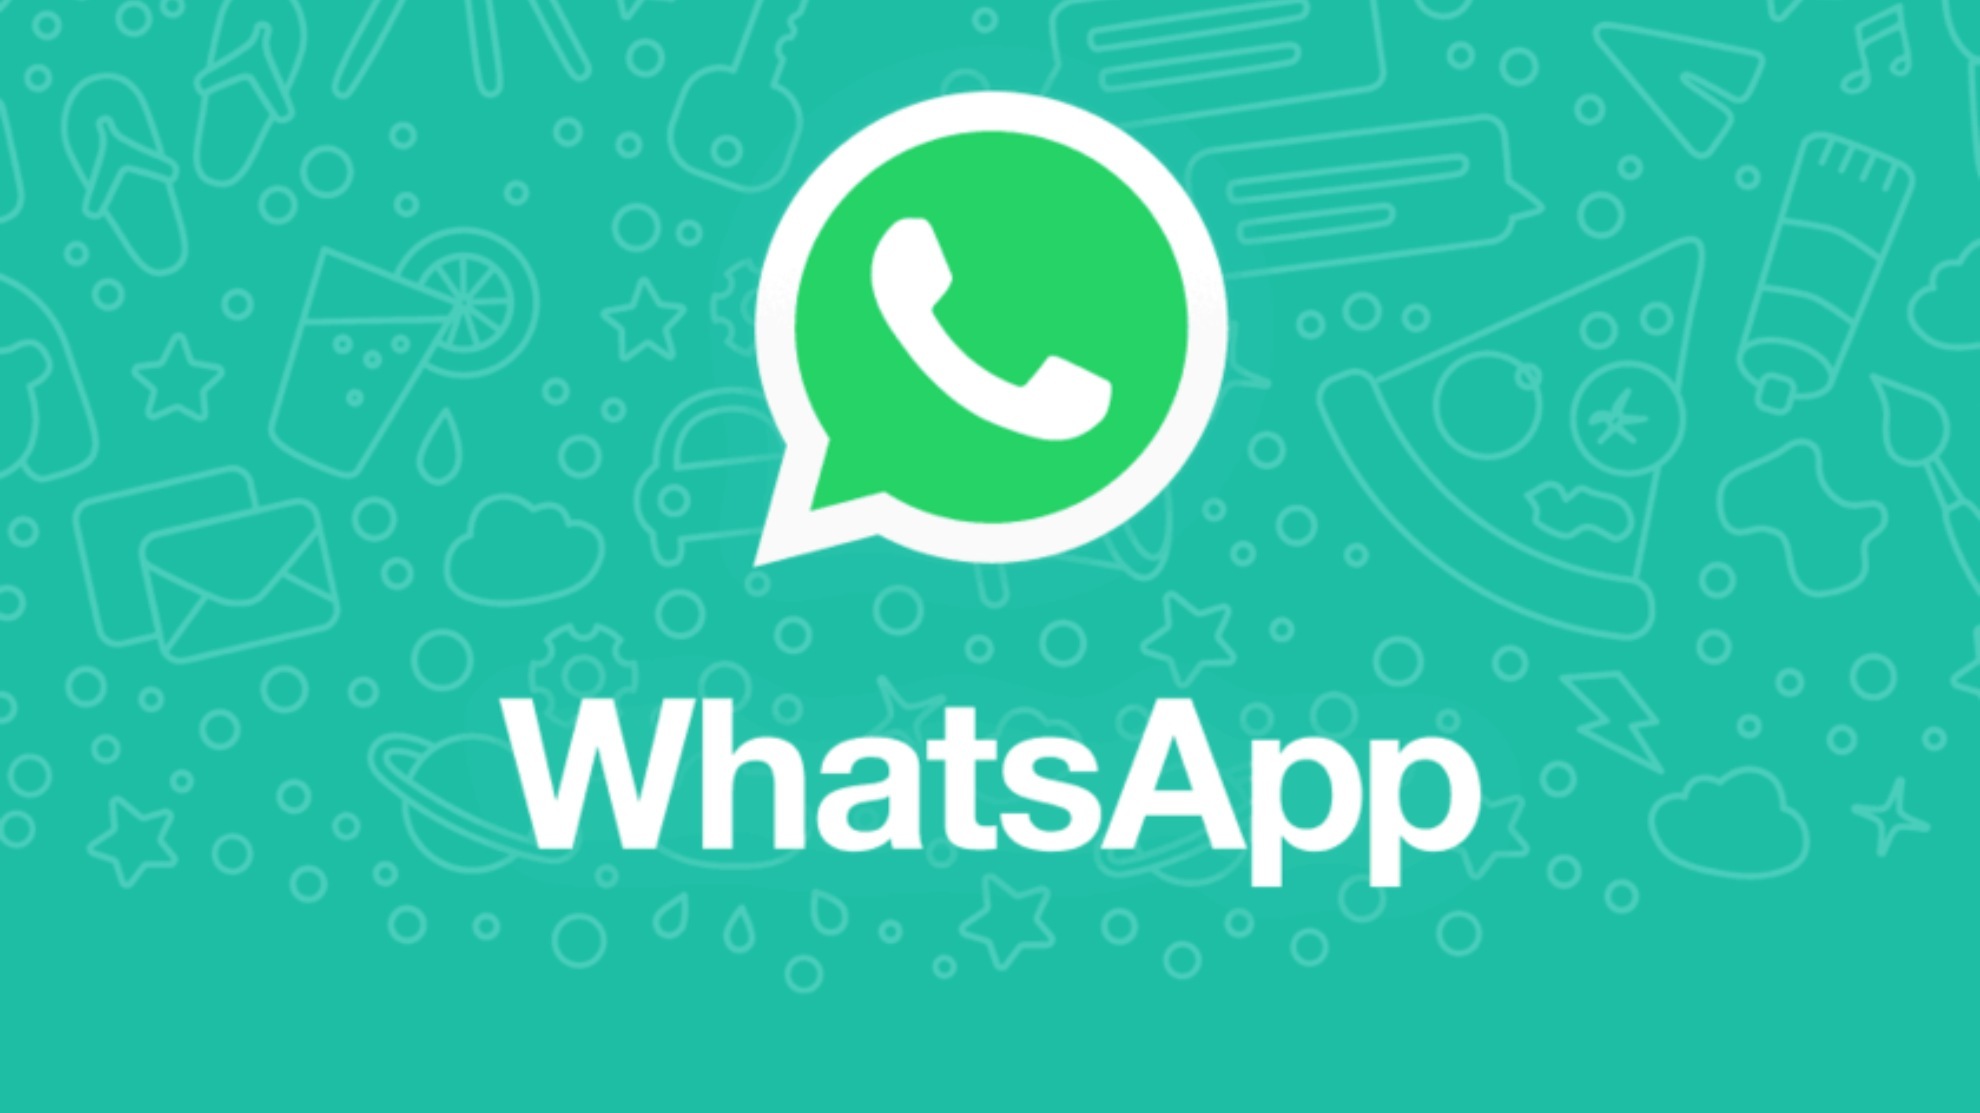 Adiós al 'Escribiendo' en WhatsApp, así puede activar el 'Modo invisible' sin instalar app externas